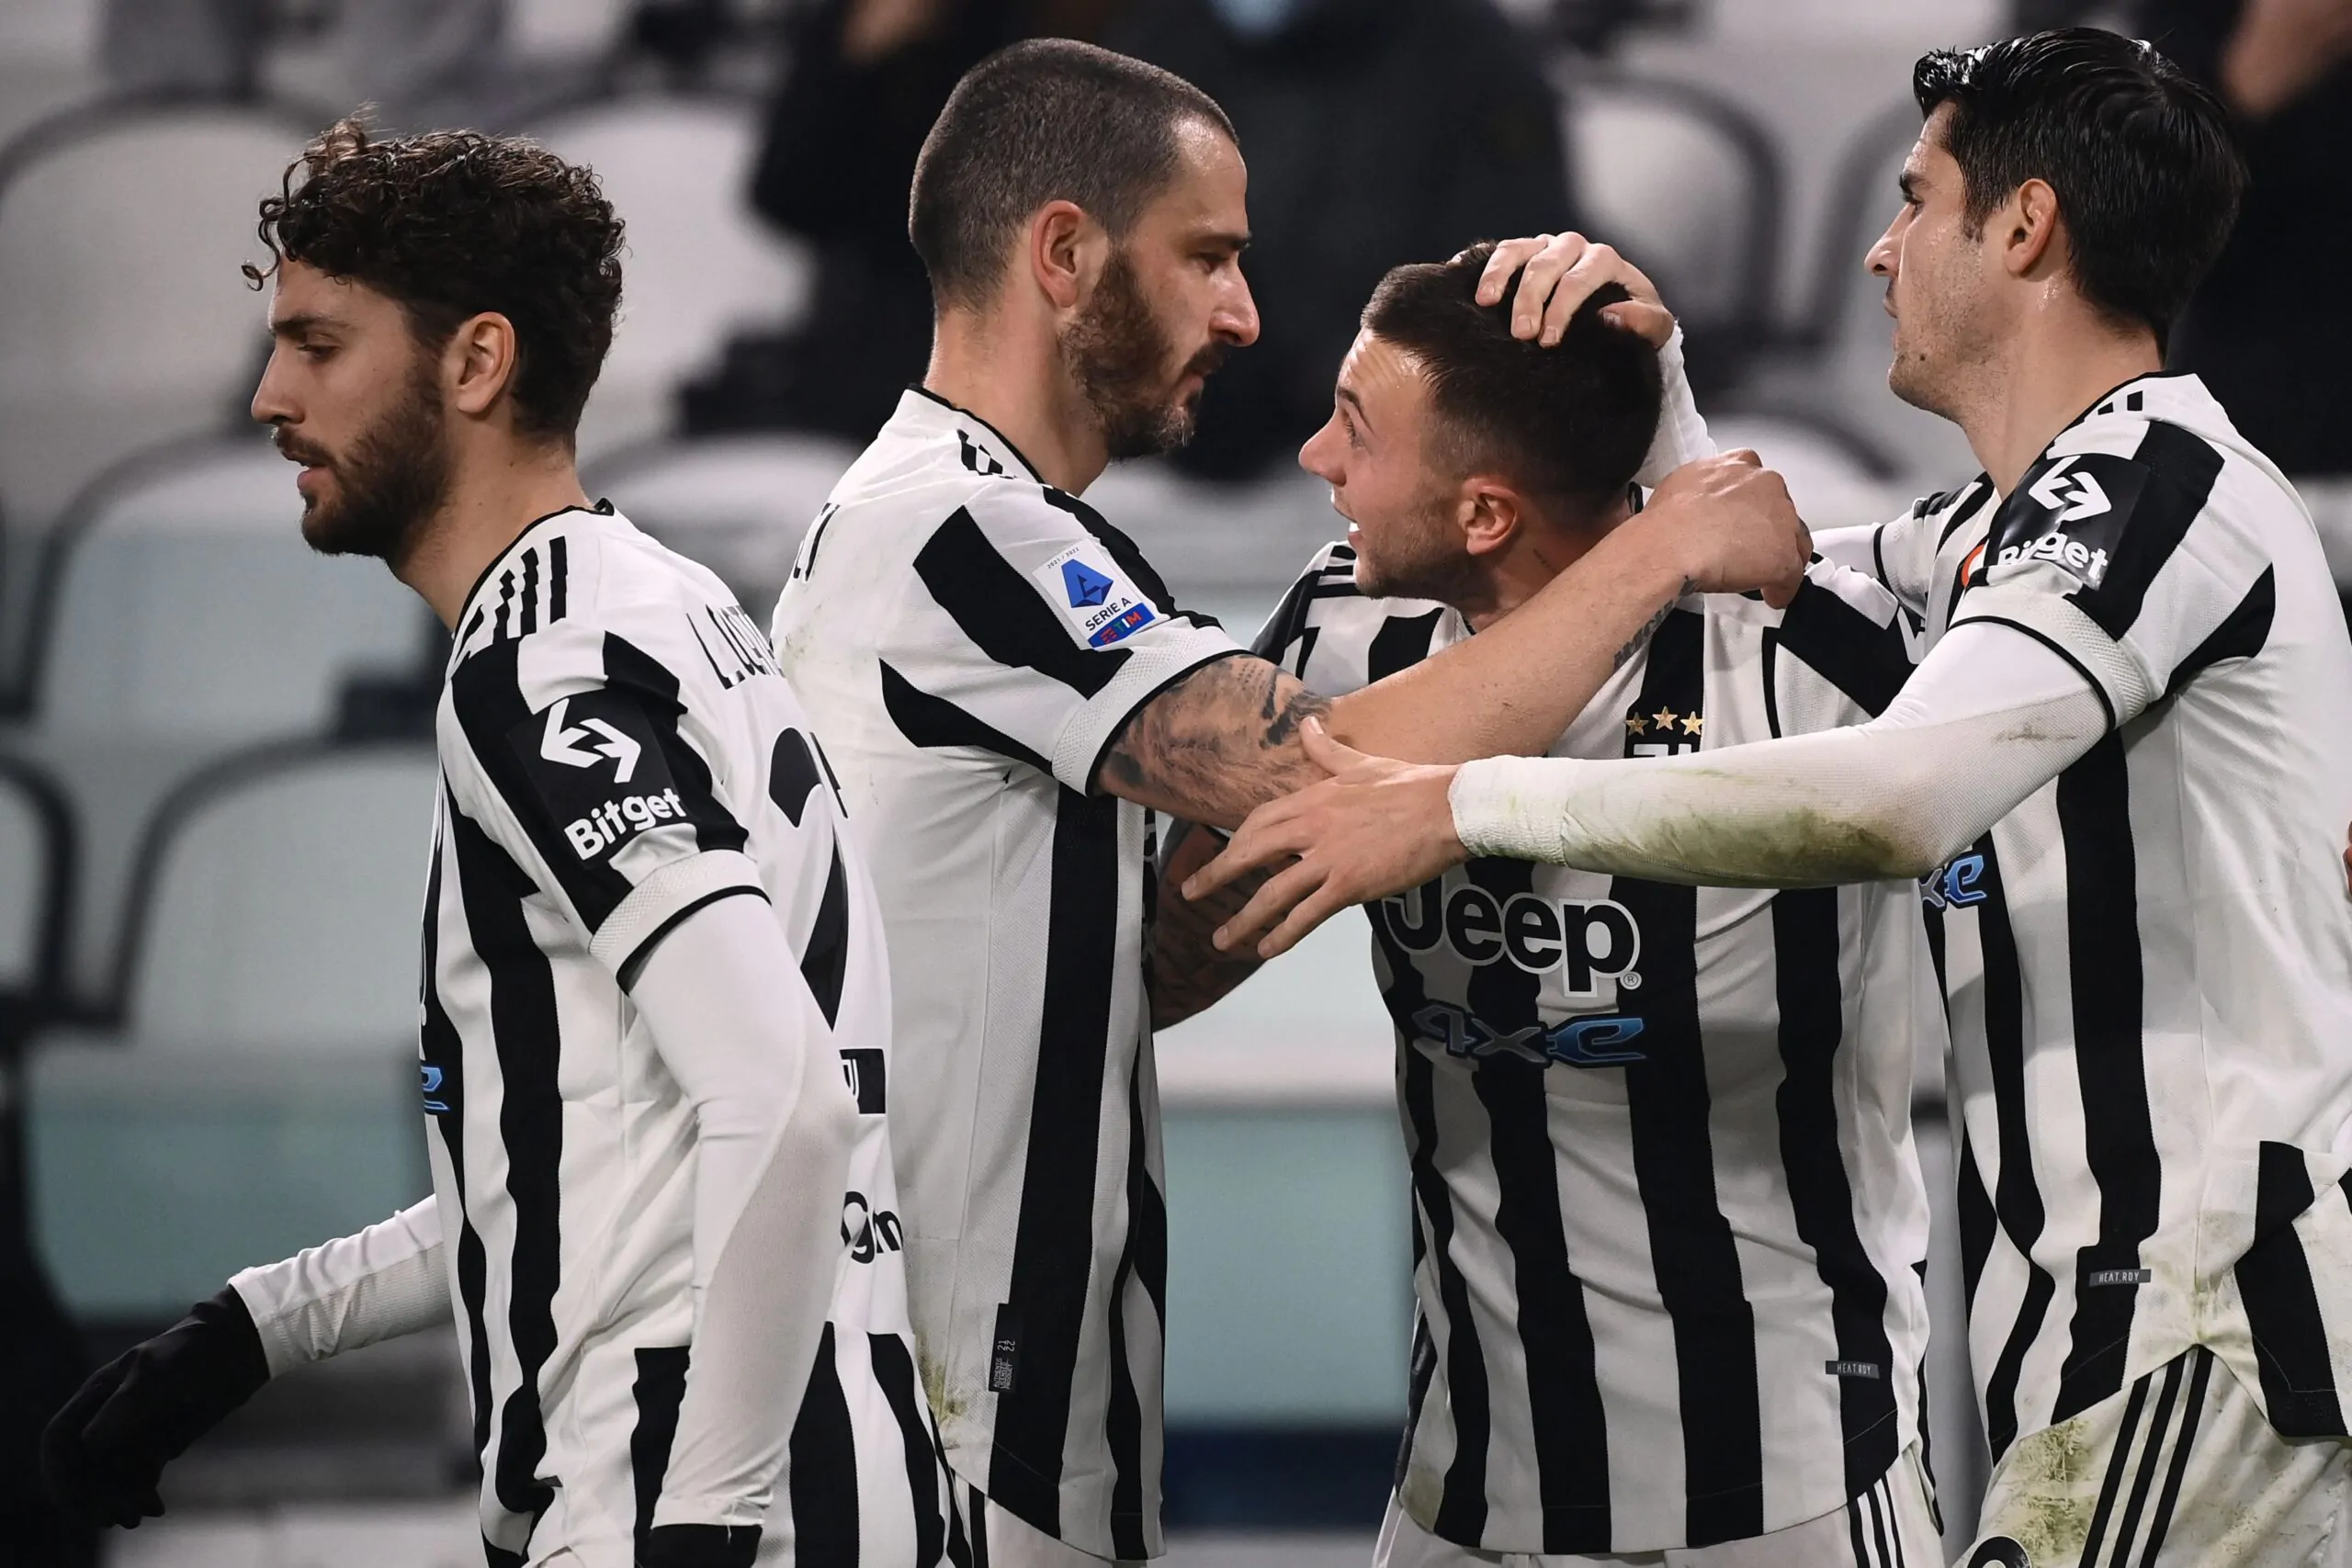 Brutte notizie per la Juventus: Allegri perde un titolare!